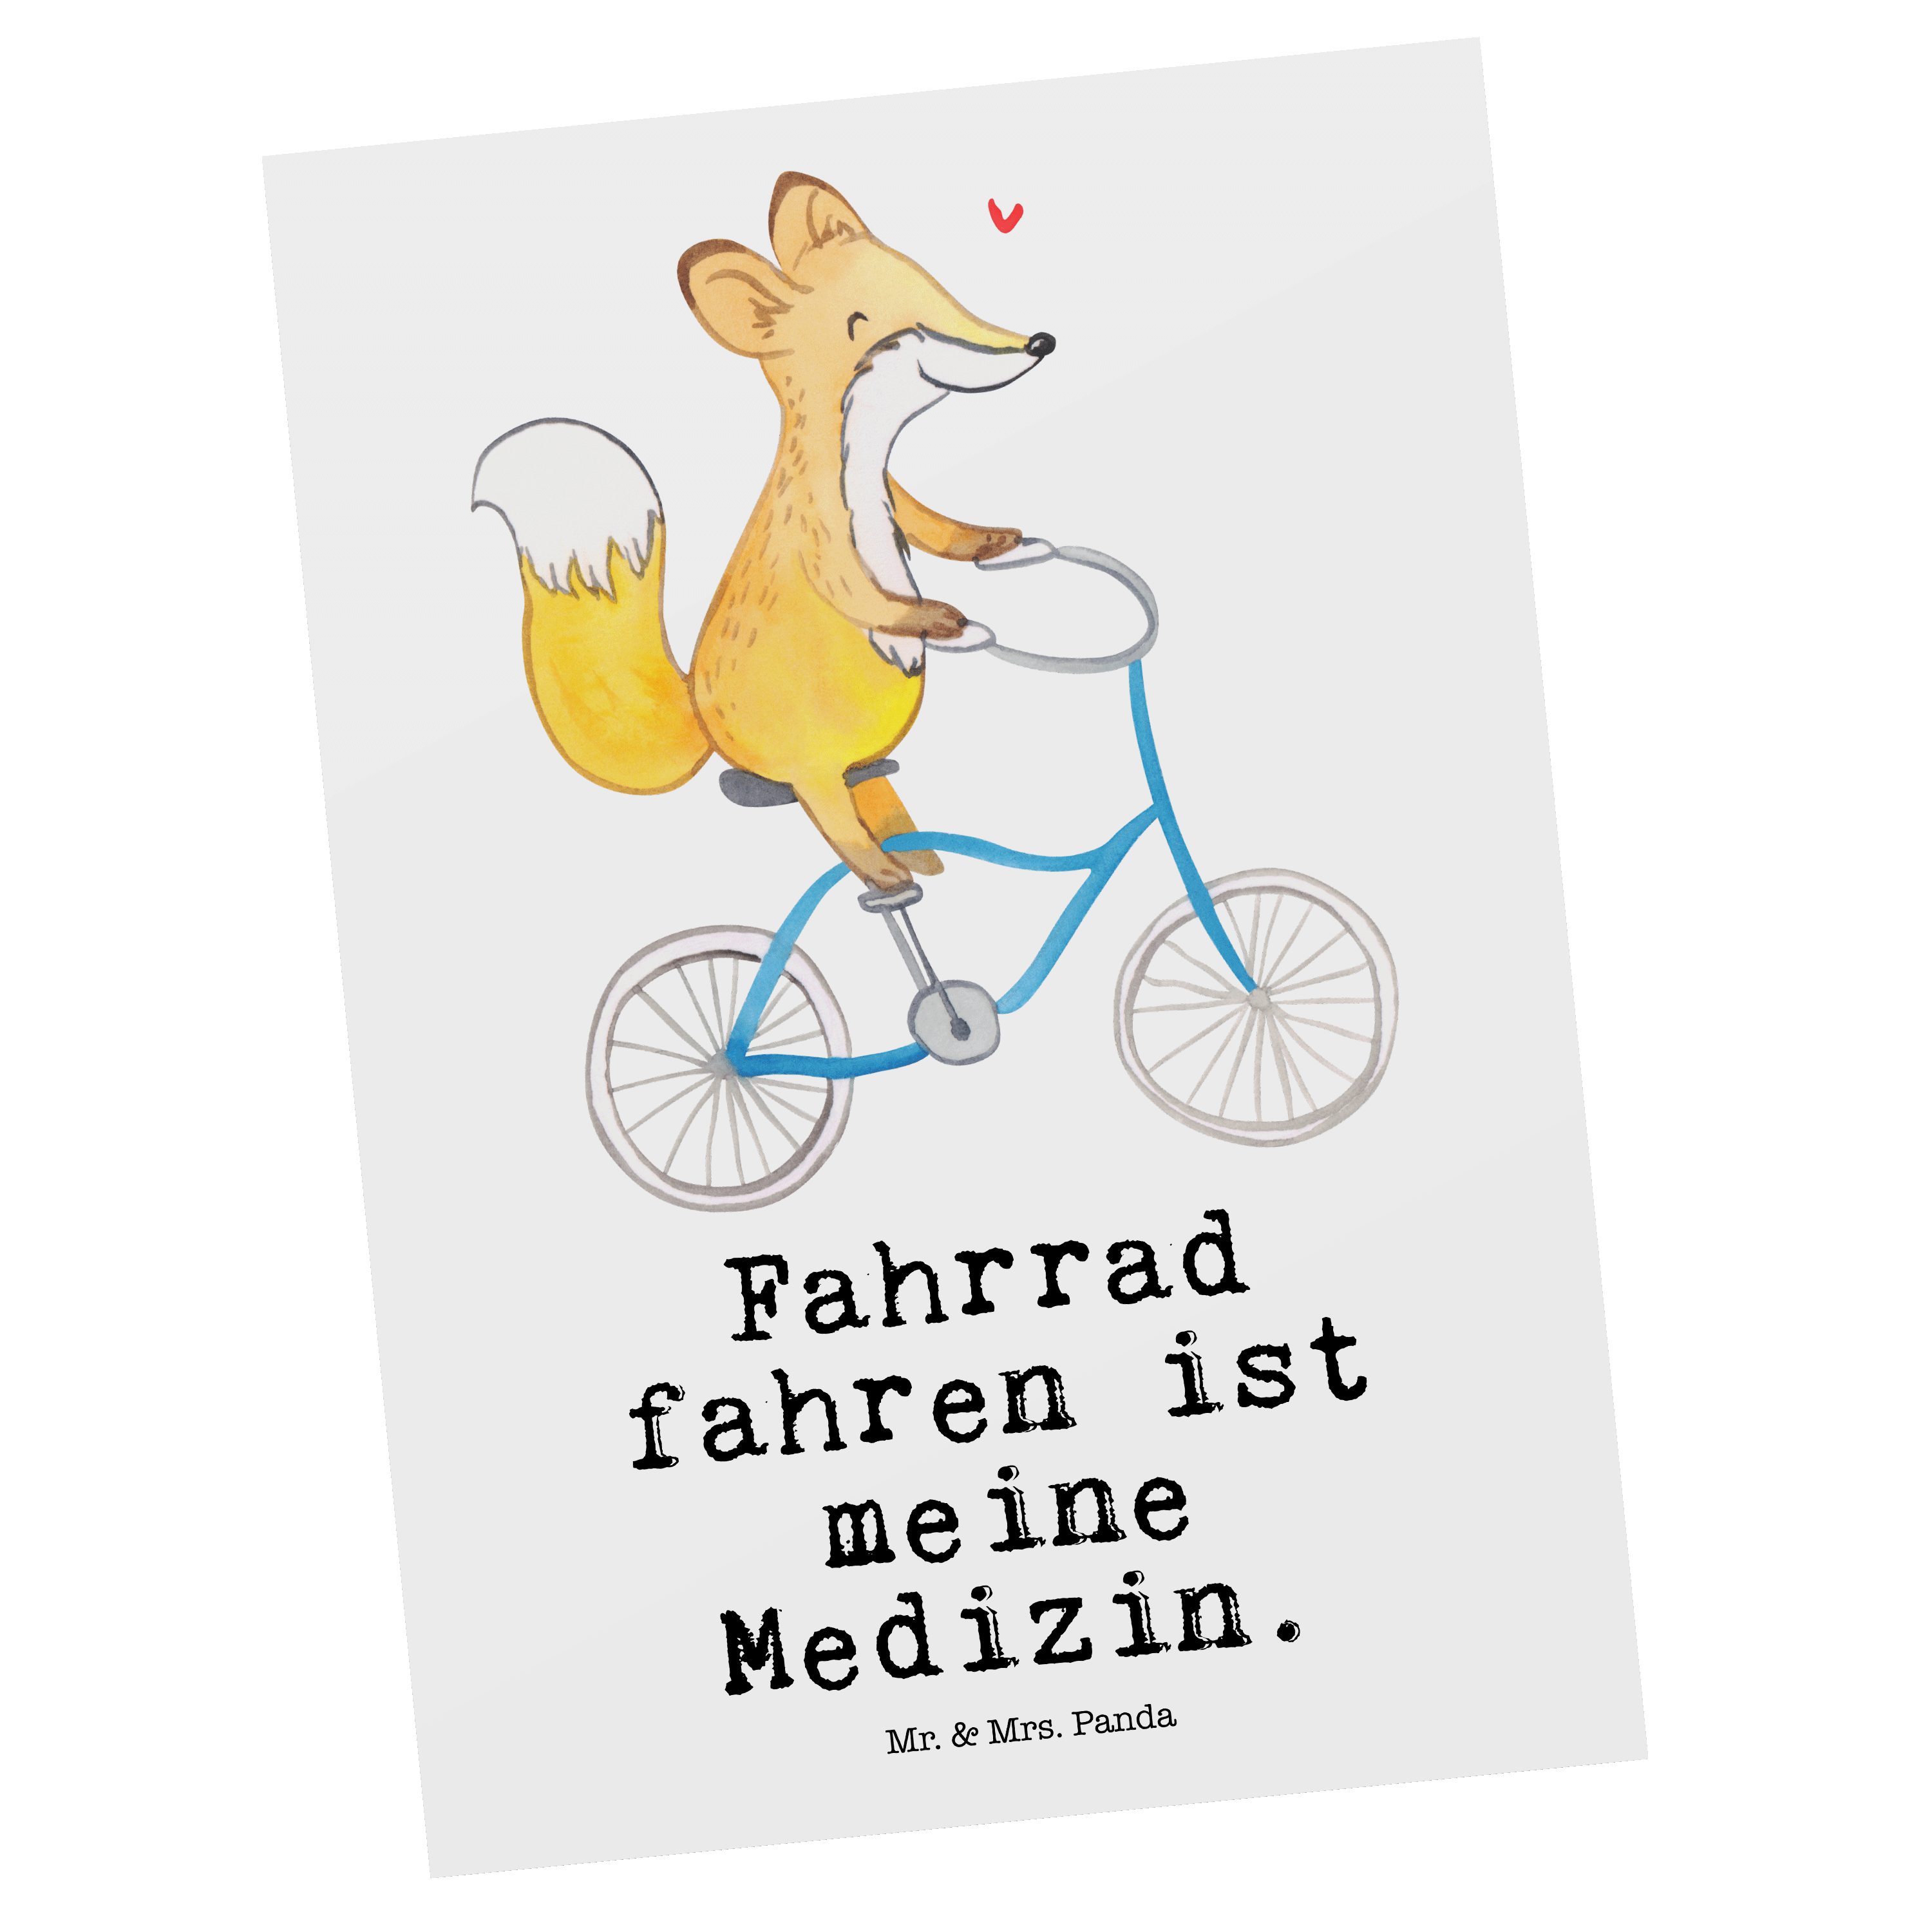 Mr. & Mrs. Geschenk, Schenken, Fahrrad - Radsport, E fahren Panda Medizin Weiß - Postkarte Fuchs